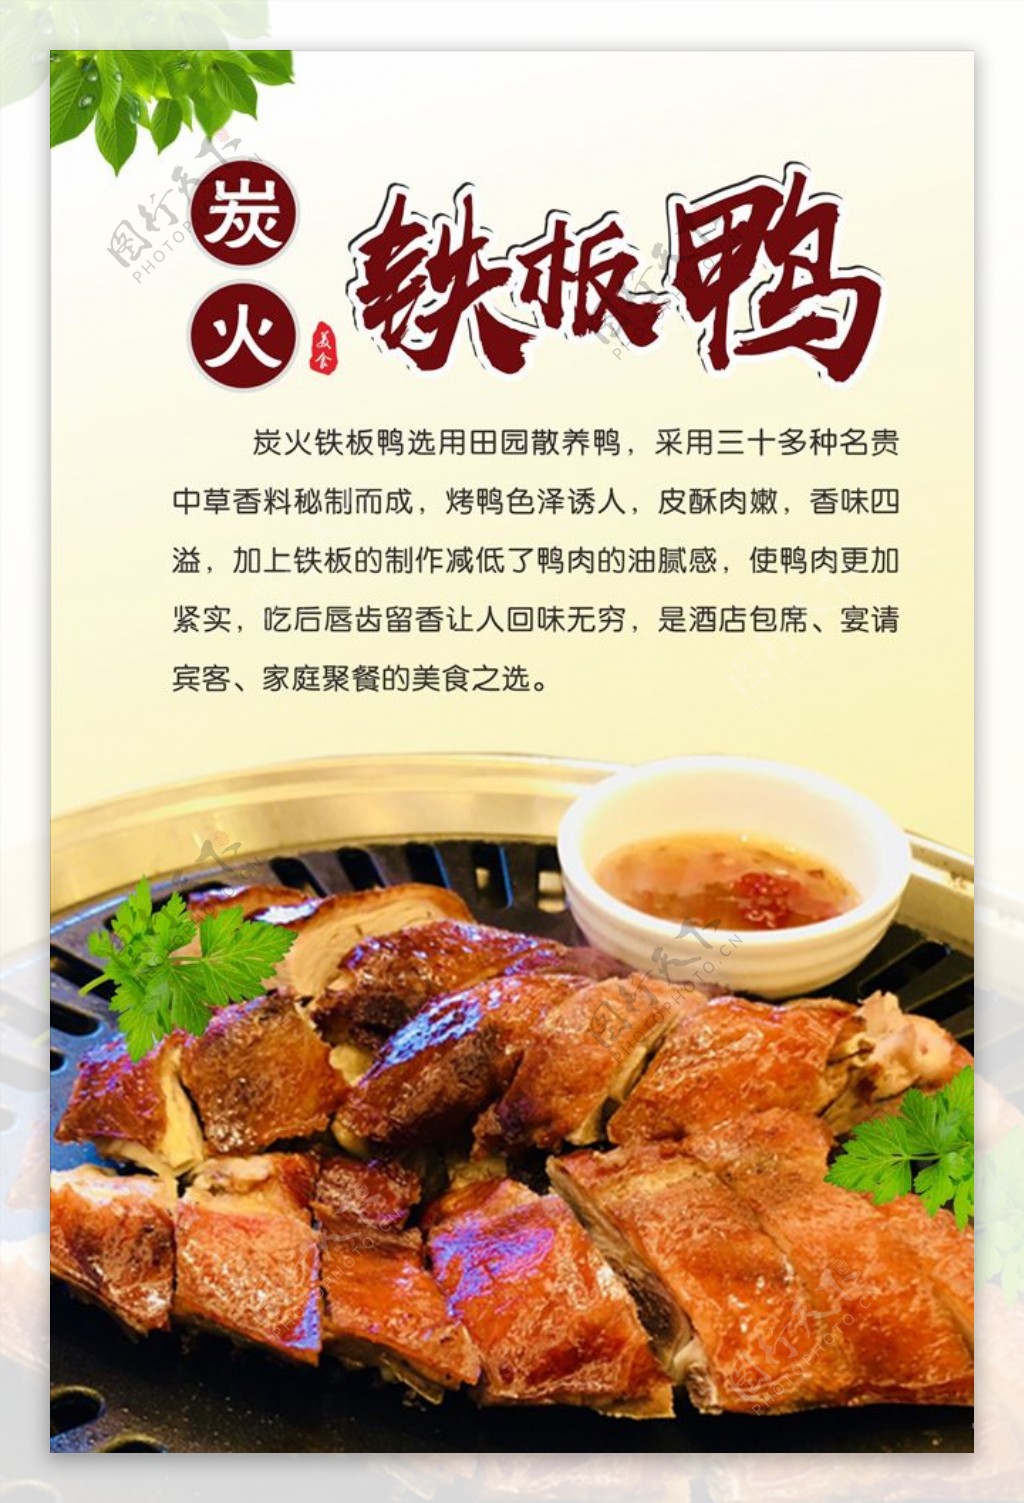 工艺由来-做铁板鸭的铁板口味很重要 河南郑州 铁板鸭-食品商务网